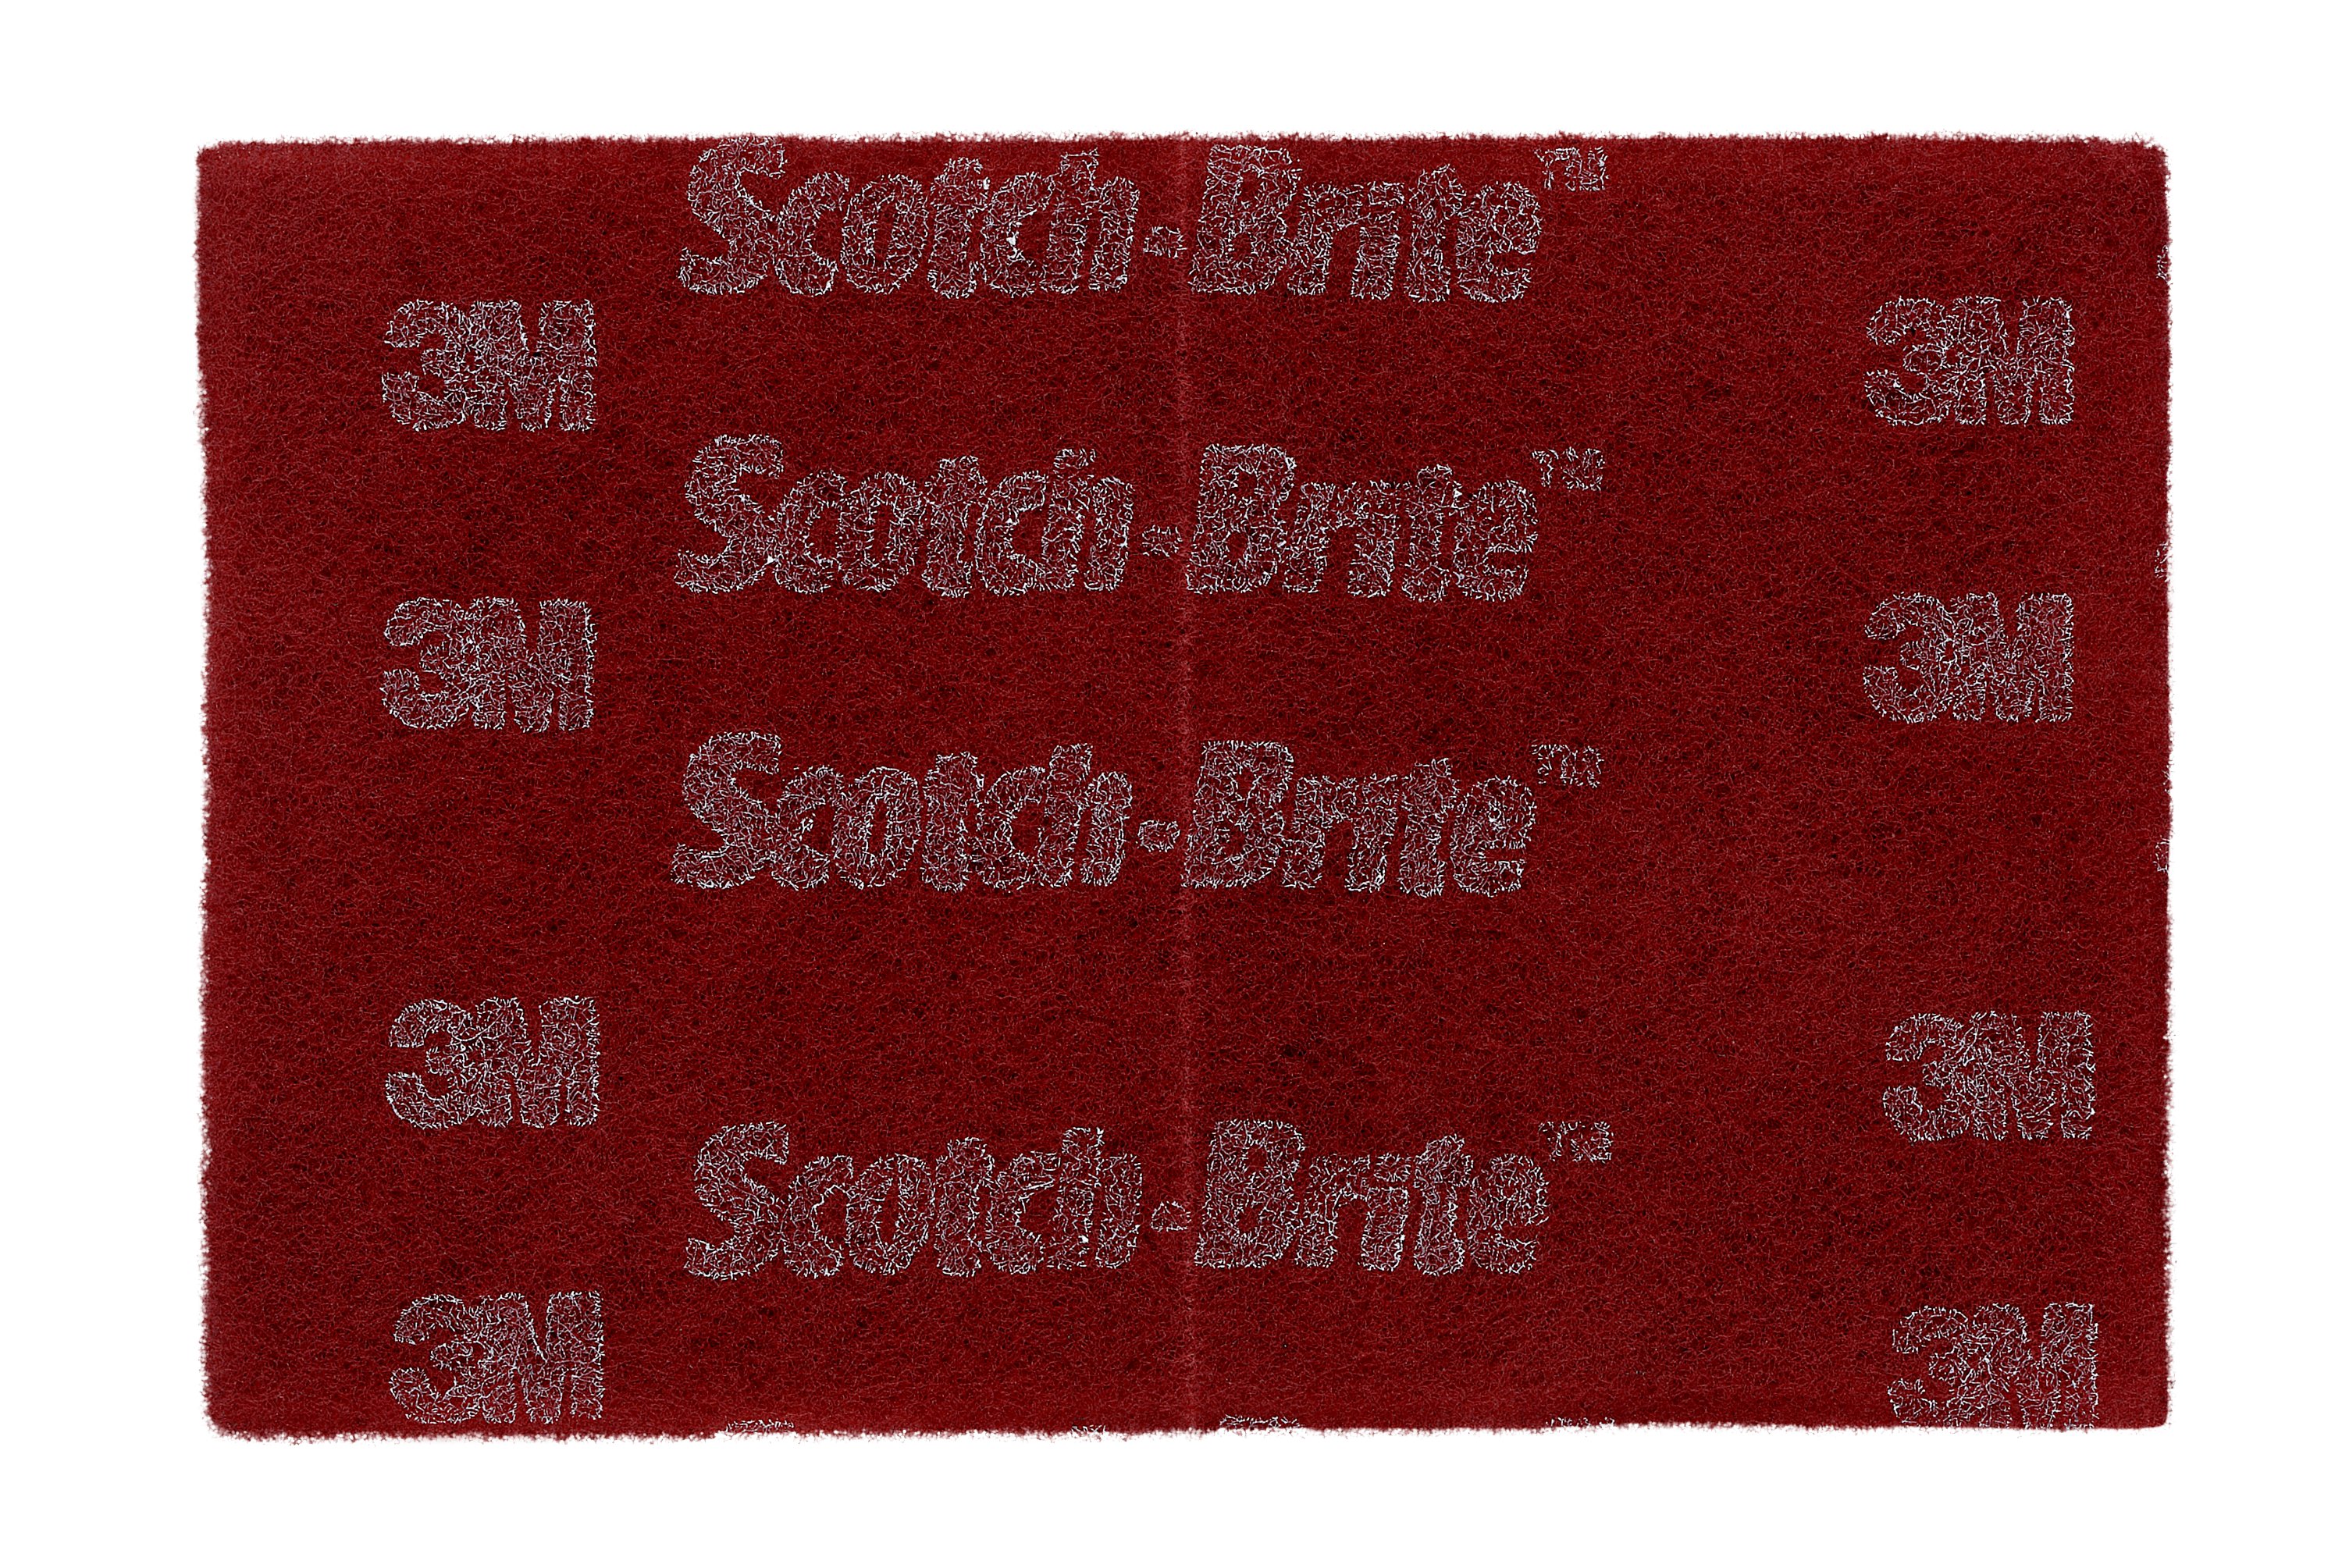 6 x 9 Scuff Pads - Scotch Brite Equivalent Hand Pads